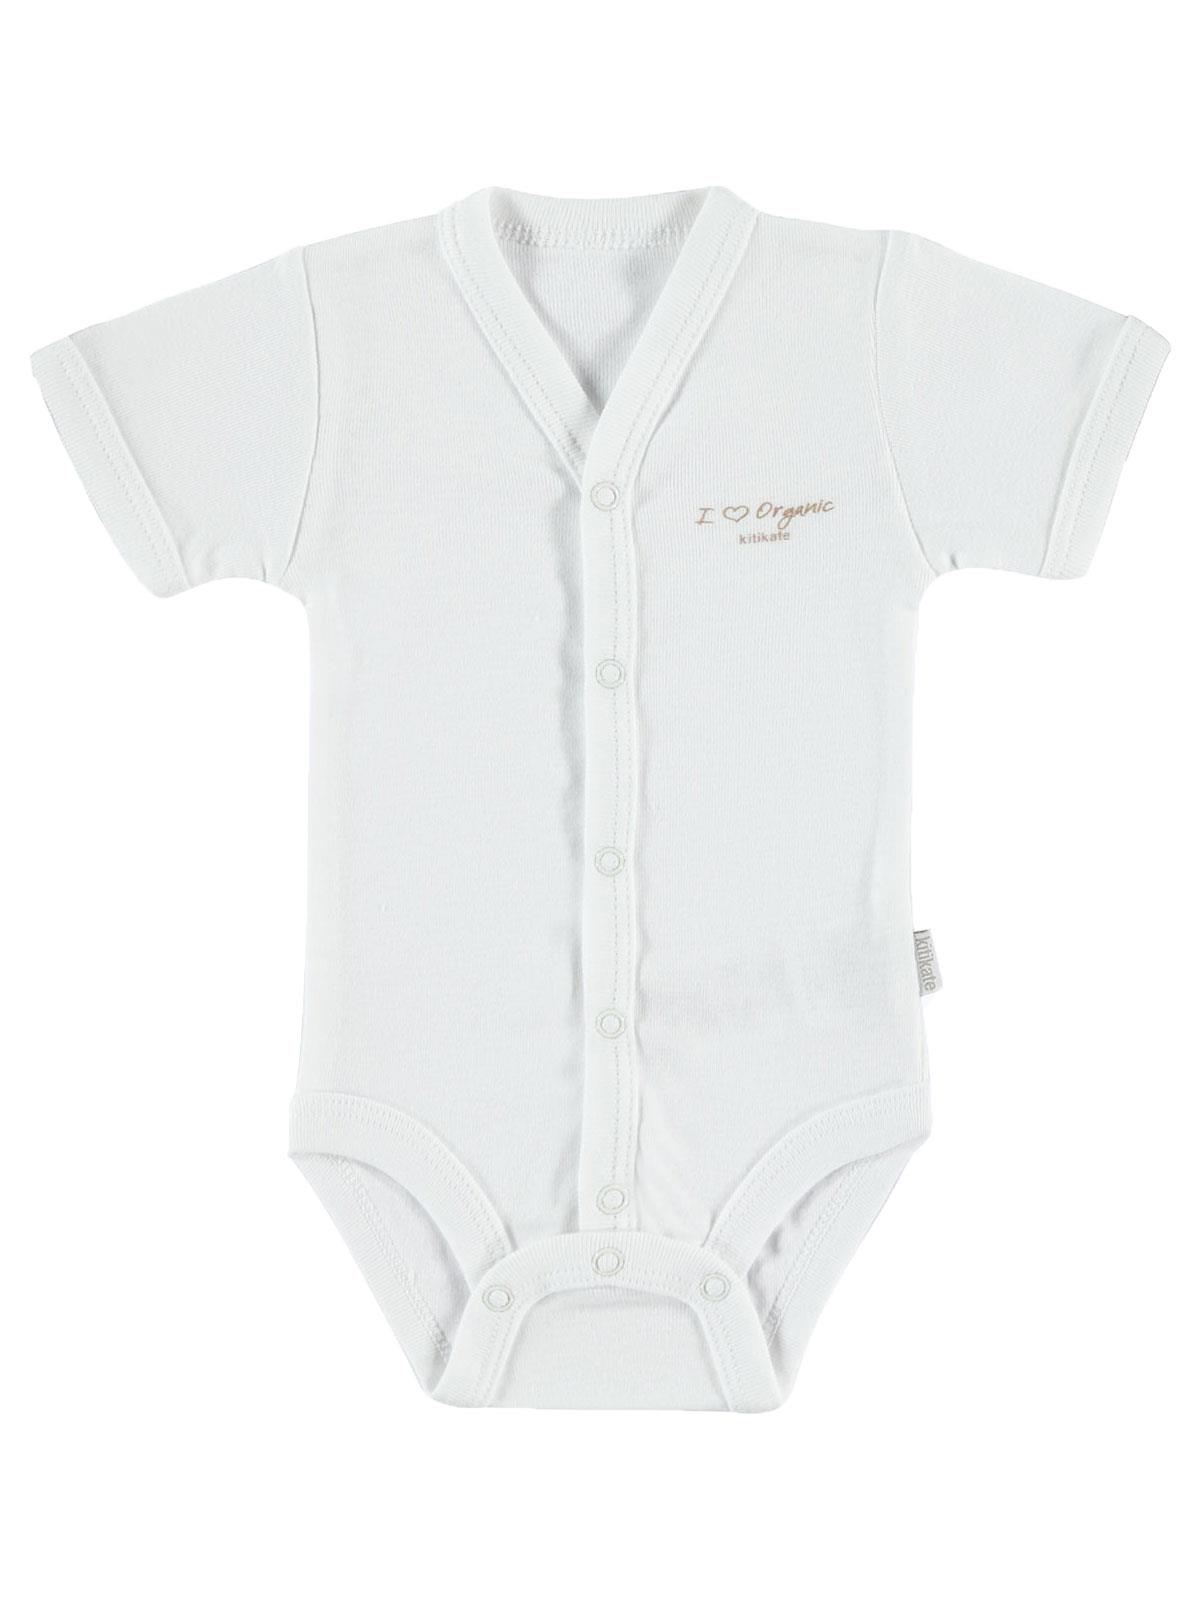 Baby Center Unisex Bebek Organik Çıtçıtlı Badi 0-3 Ay Beyaz